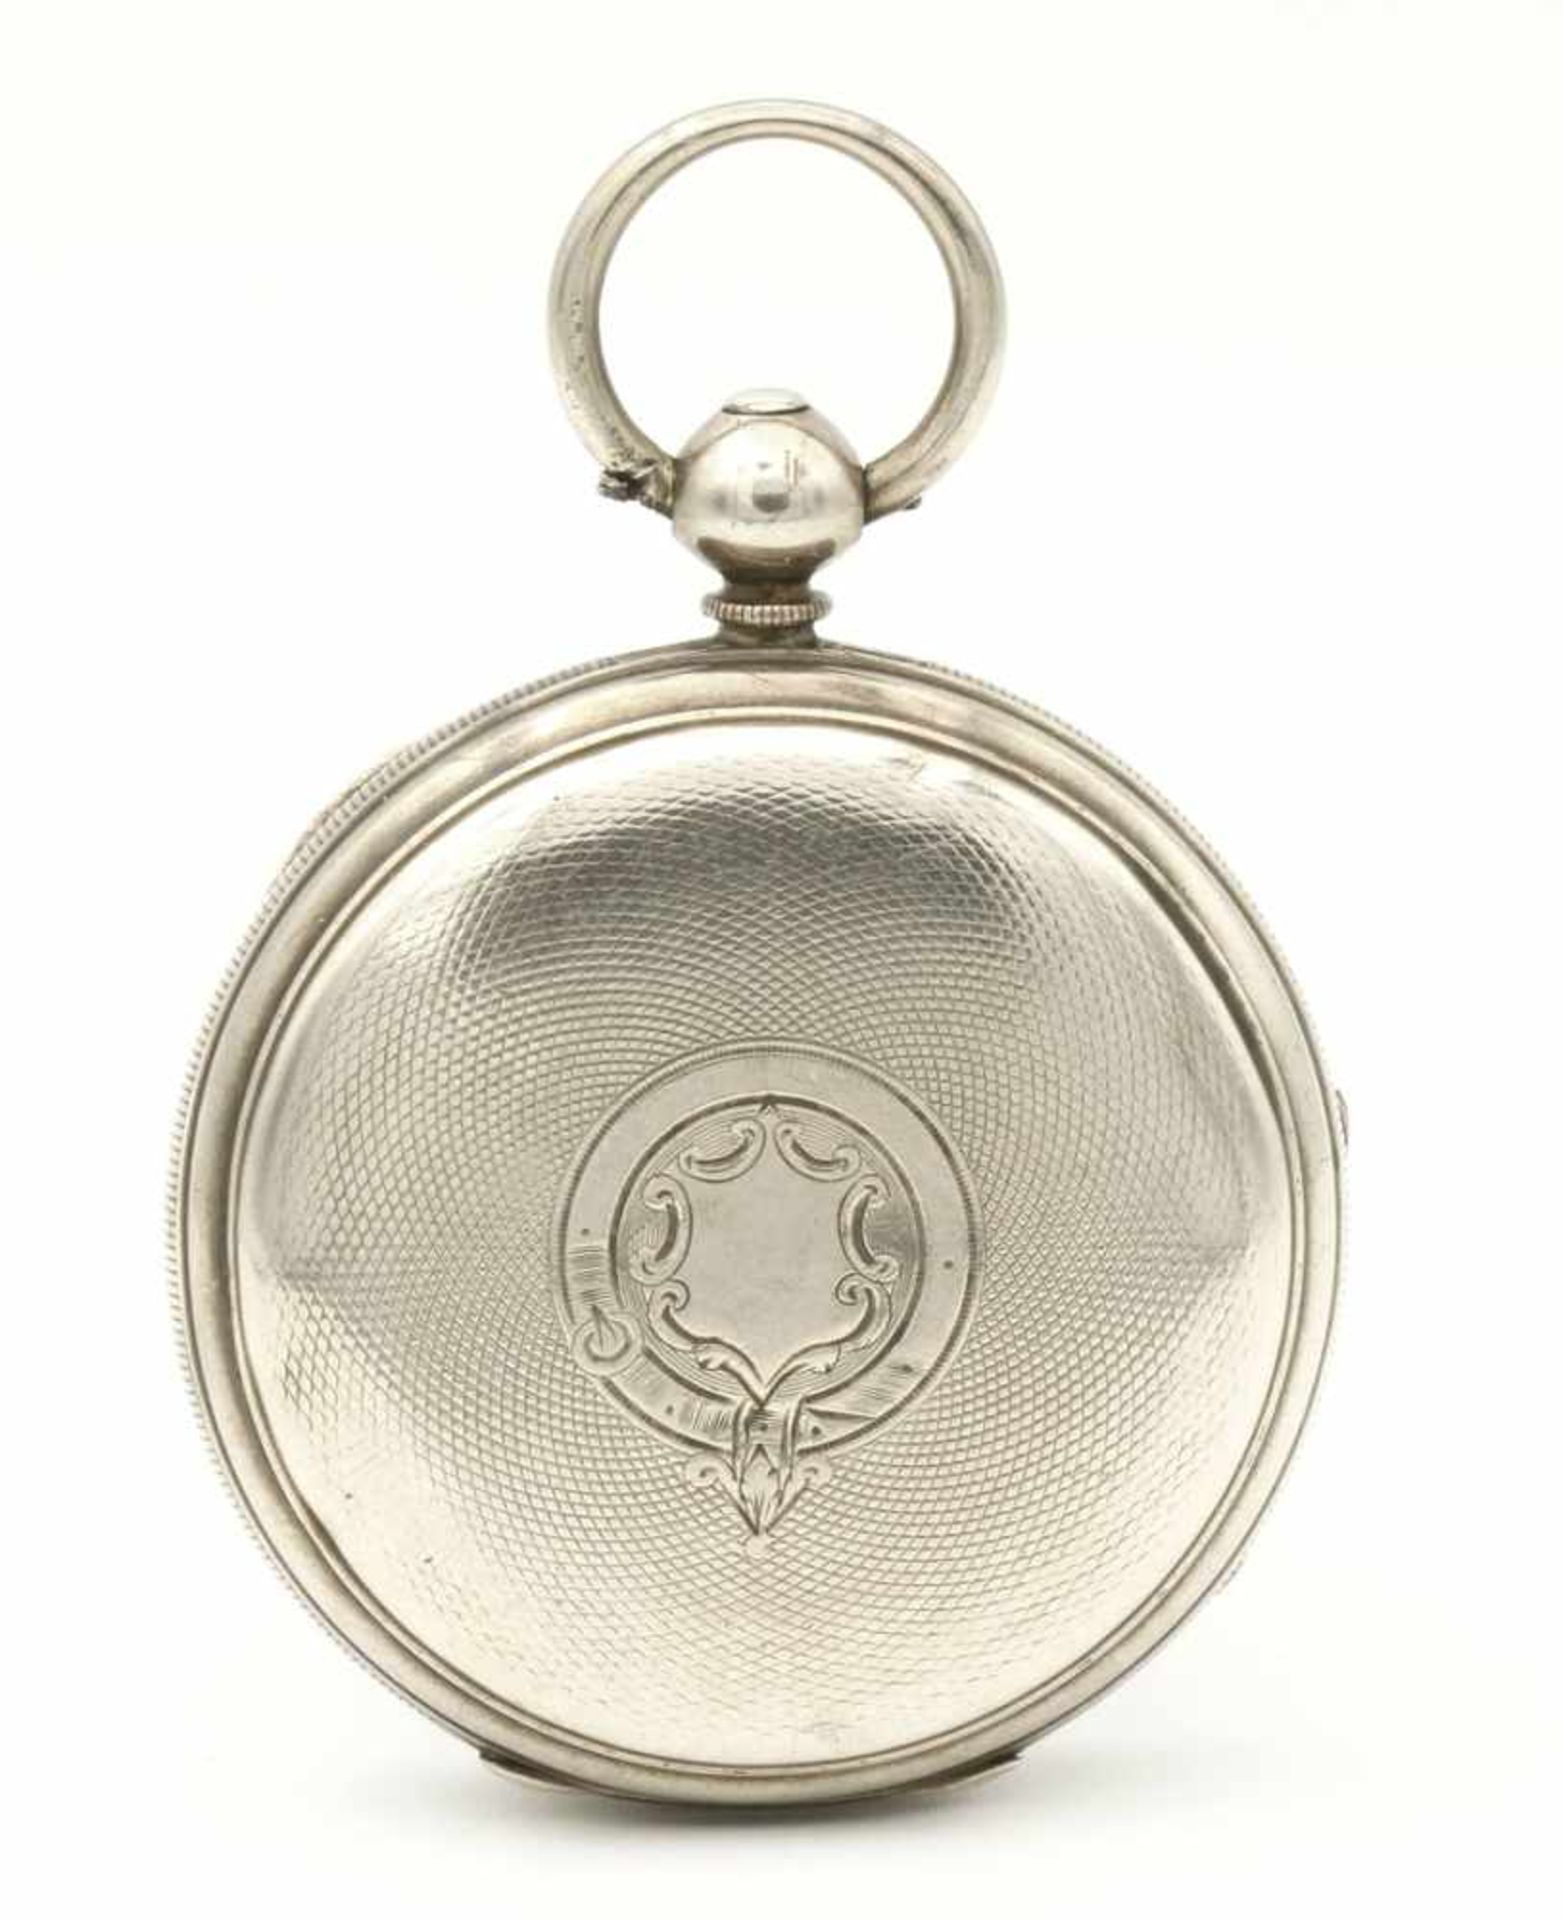 Aufwendig verzierte englische Silbertaschenuhr, um 1870 - Bild 5 aus 7